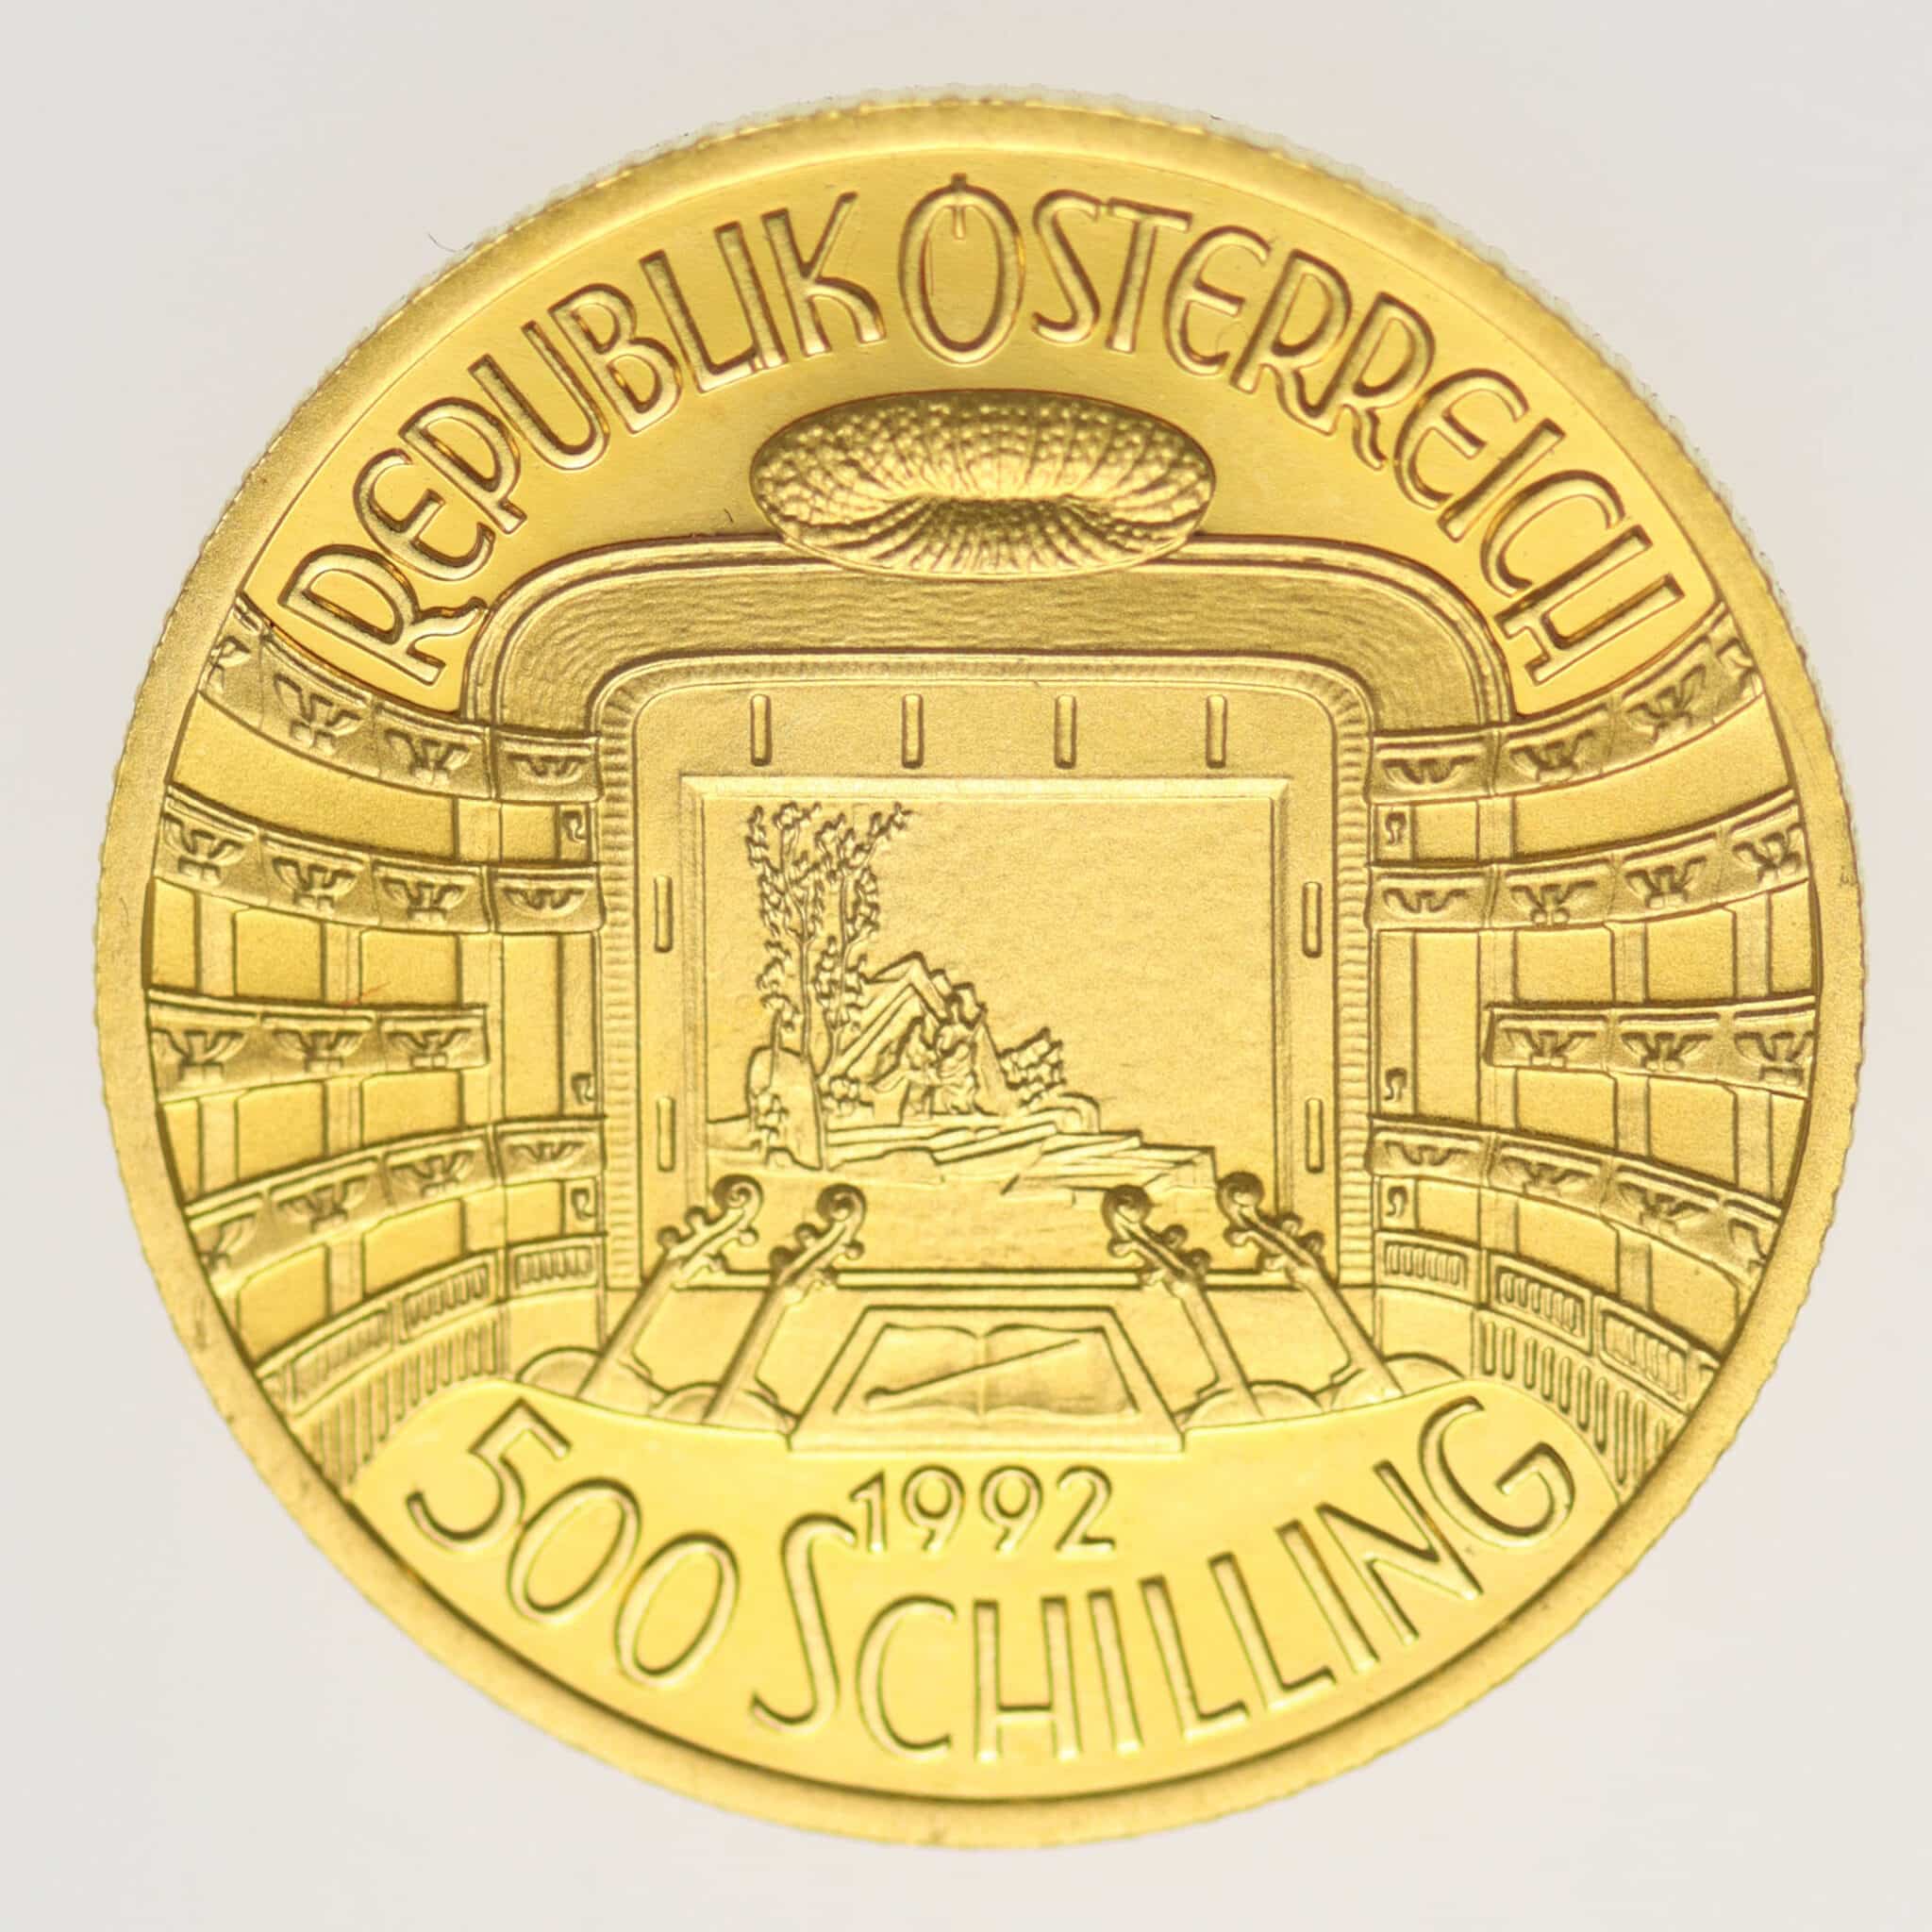 oesterreich - Österreich Zweite Republik 500 Schilling 1992